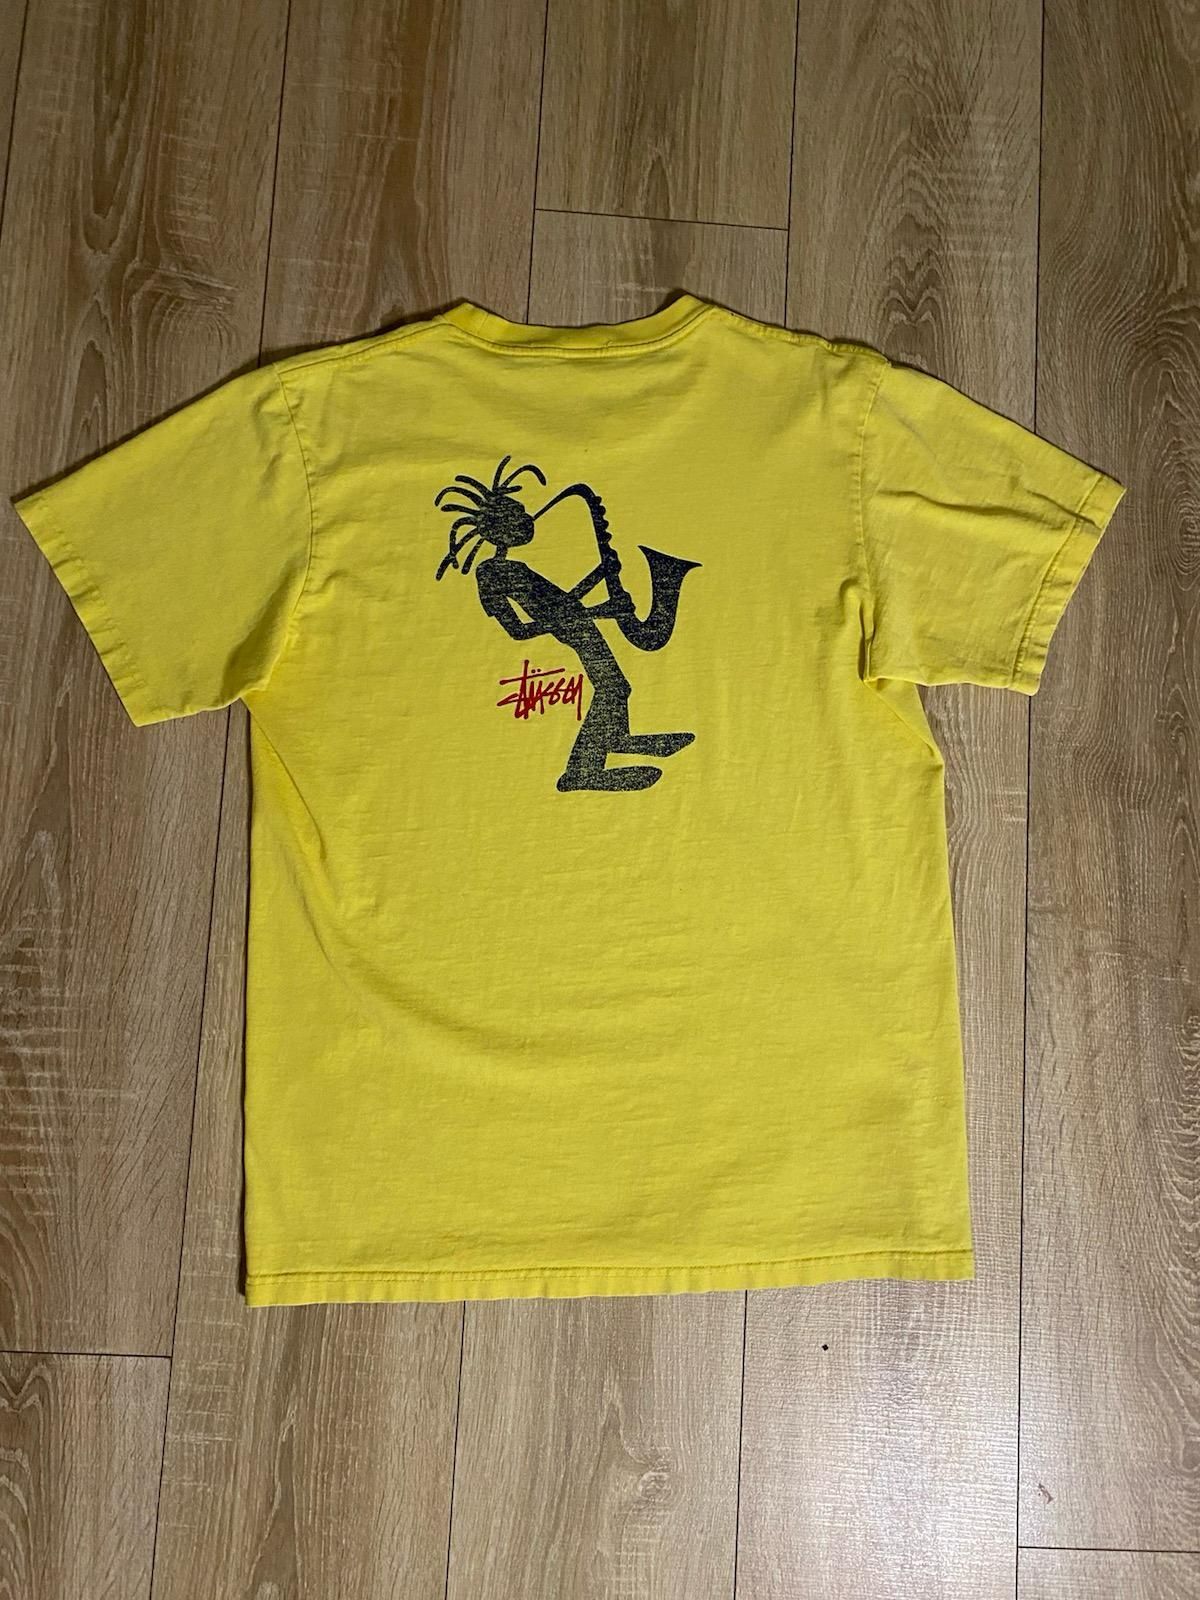 Koszulka T-shirt Stussy Stüssy Outdoor lata 90. Jazzman. Żółta. L